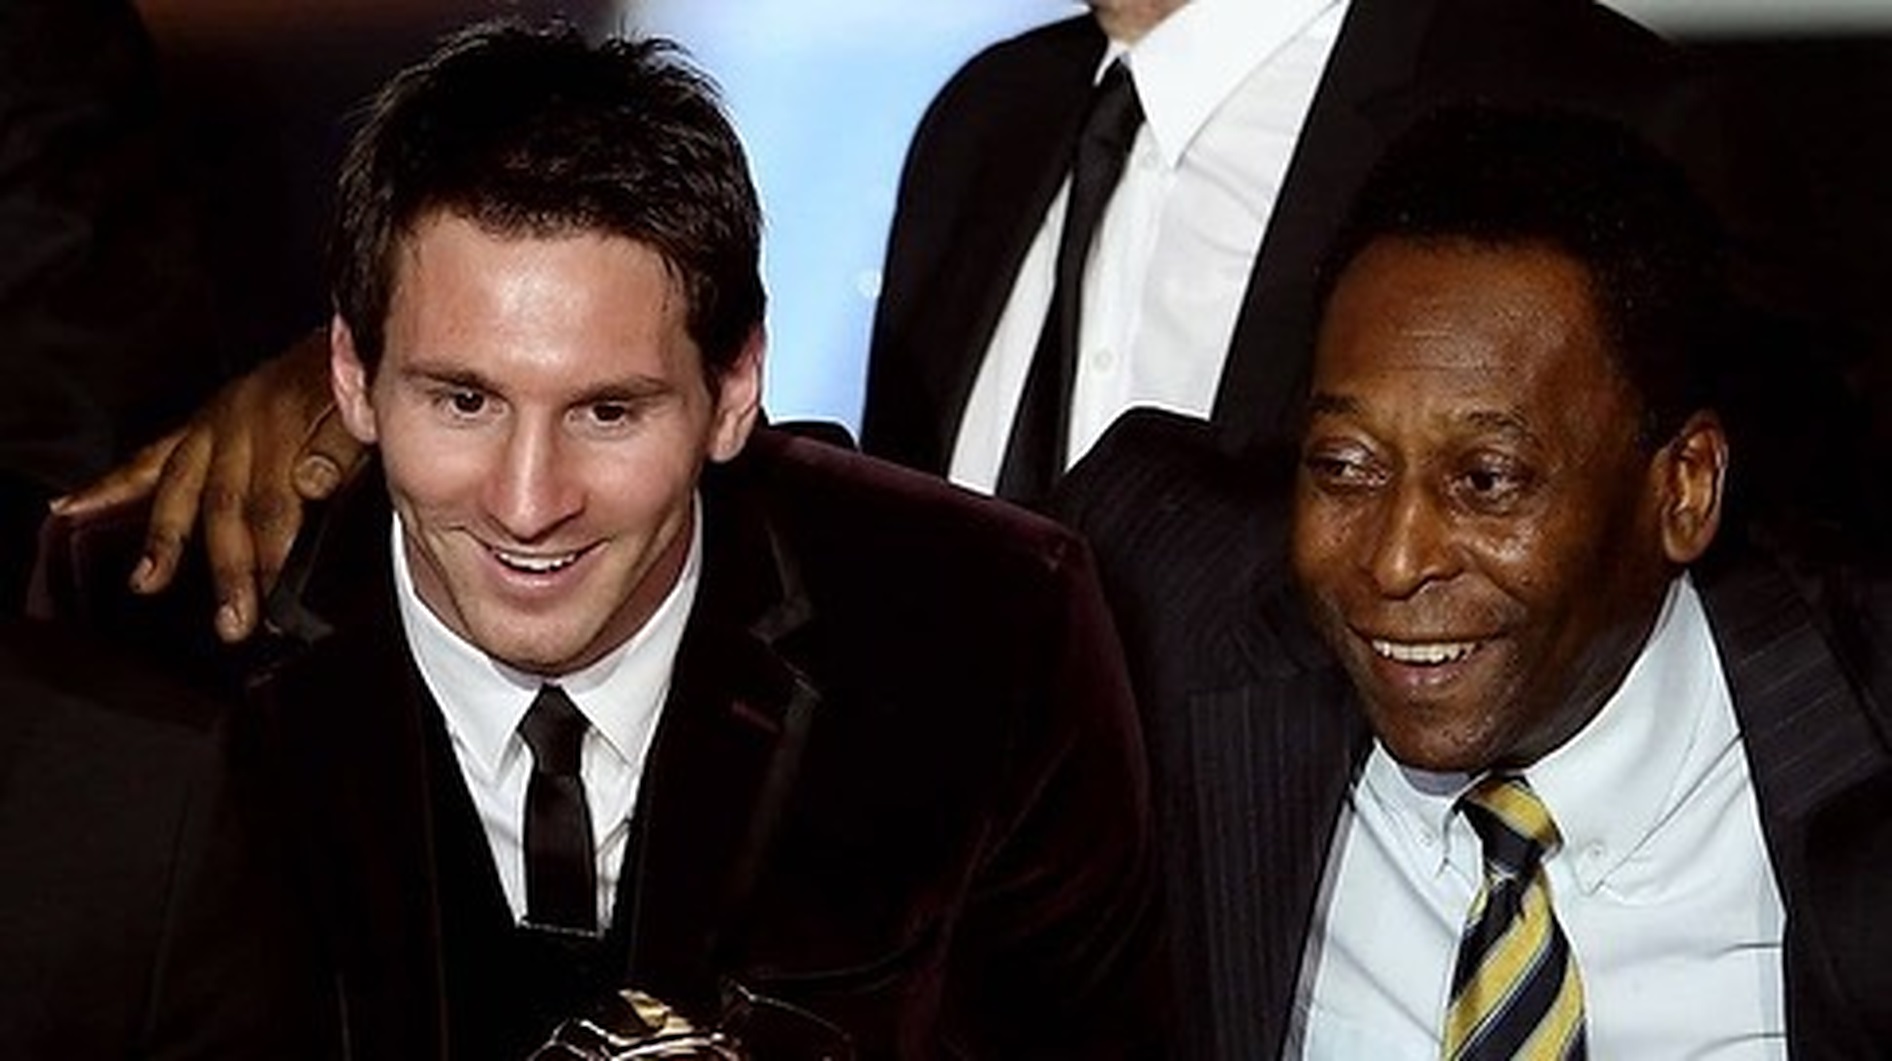 Le leggende del calcio piangono la morte di Pelé.  Ondata di messaggi di cordoglio dopo la scomparsa della leggenda brasiliana – Evento del giorno